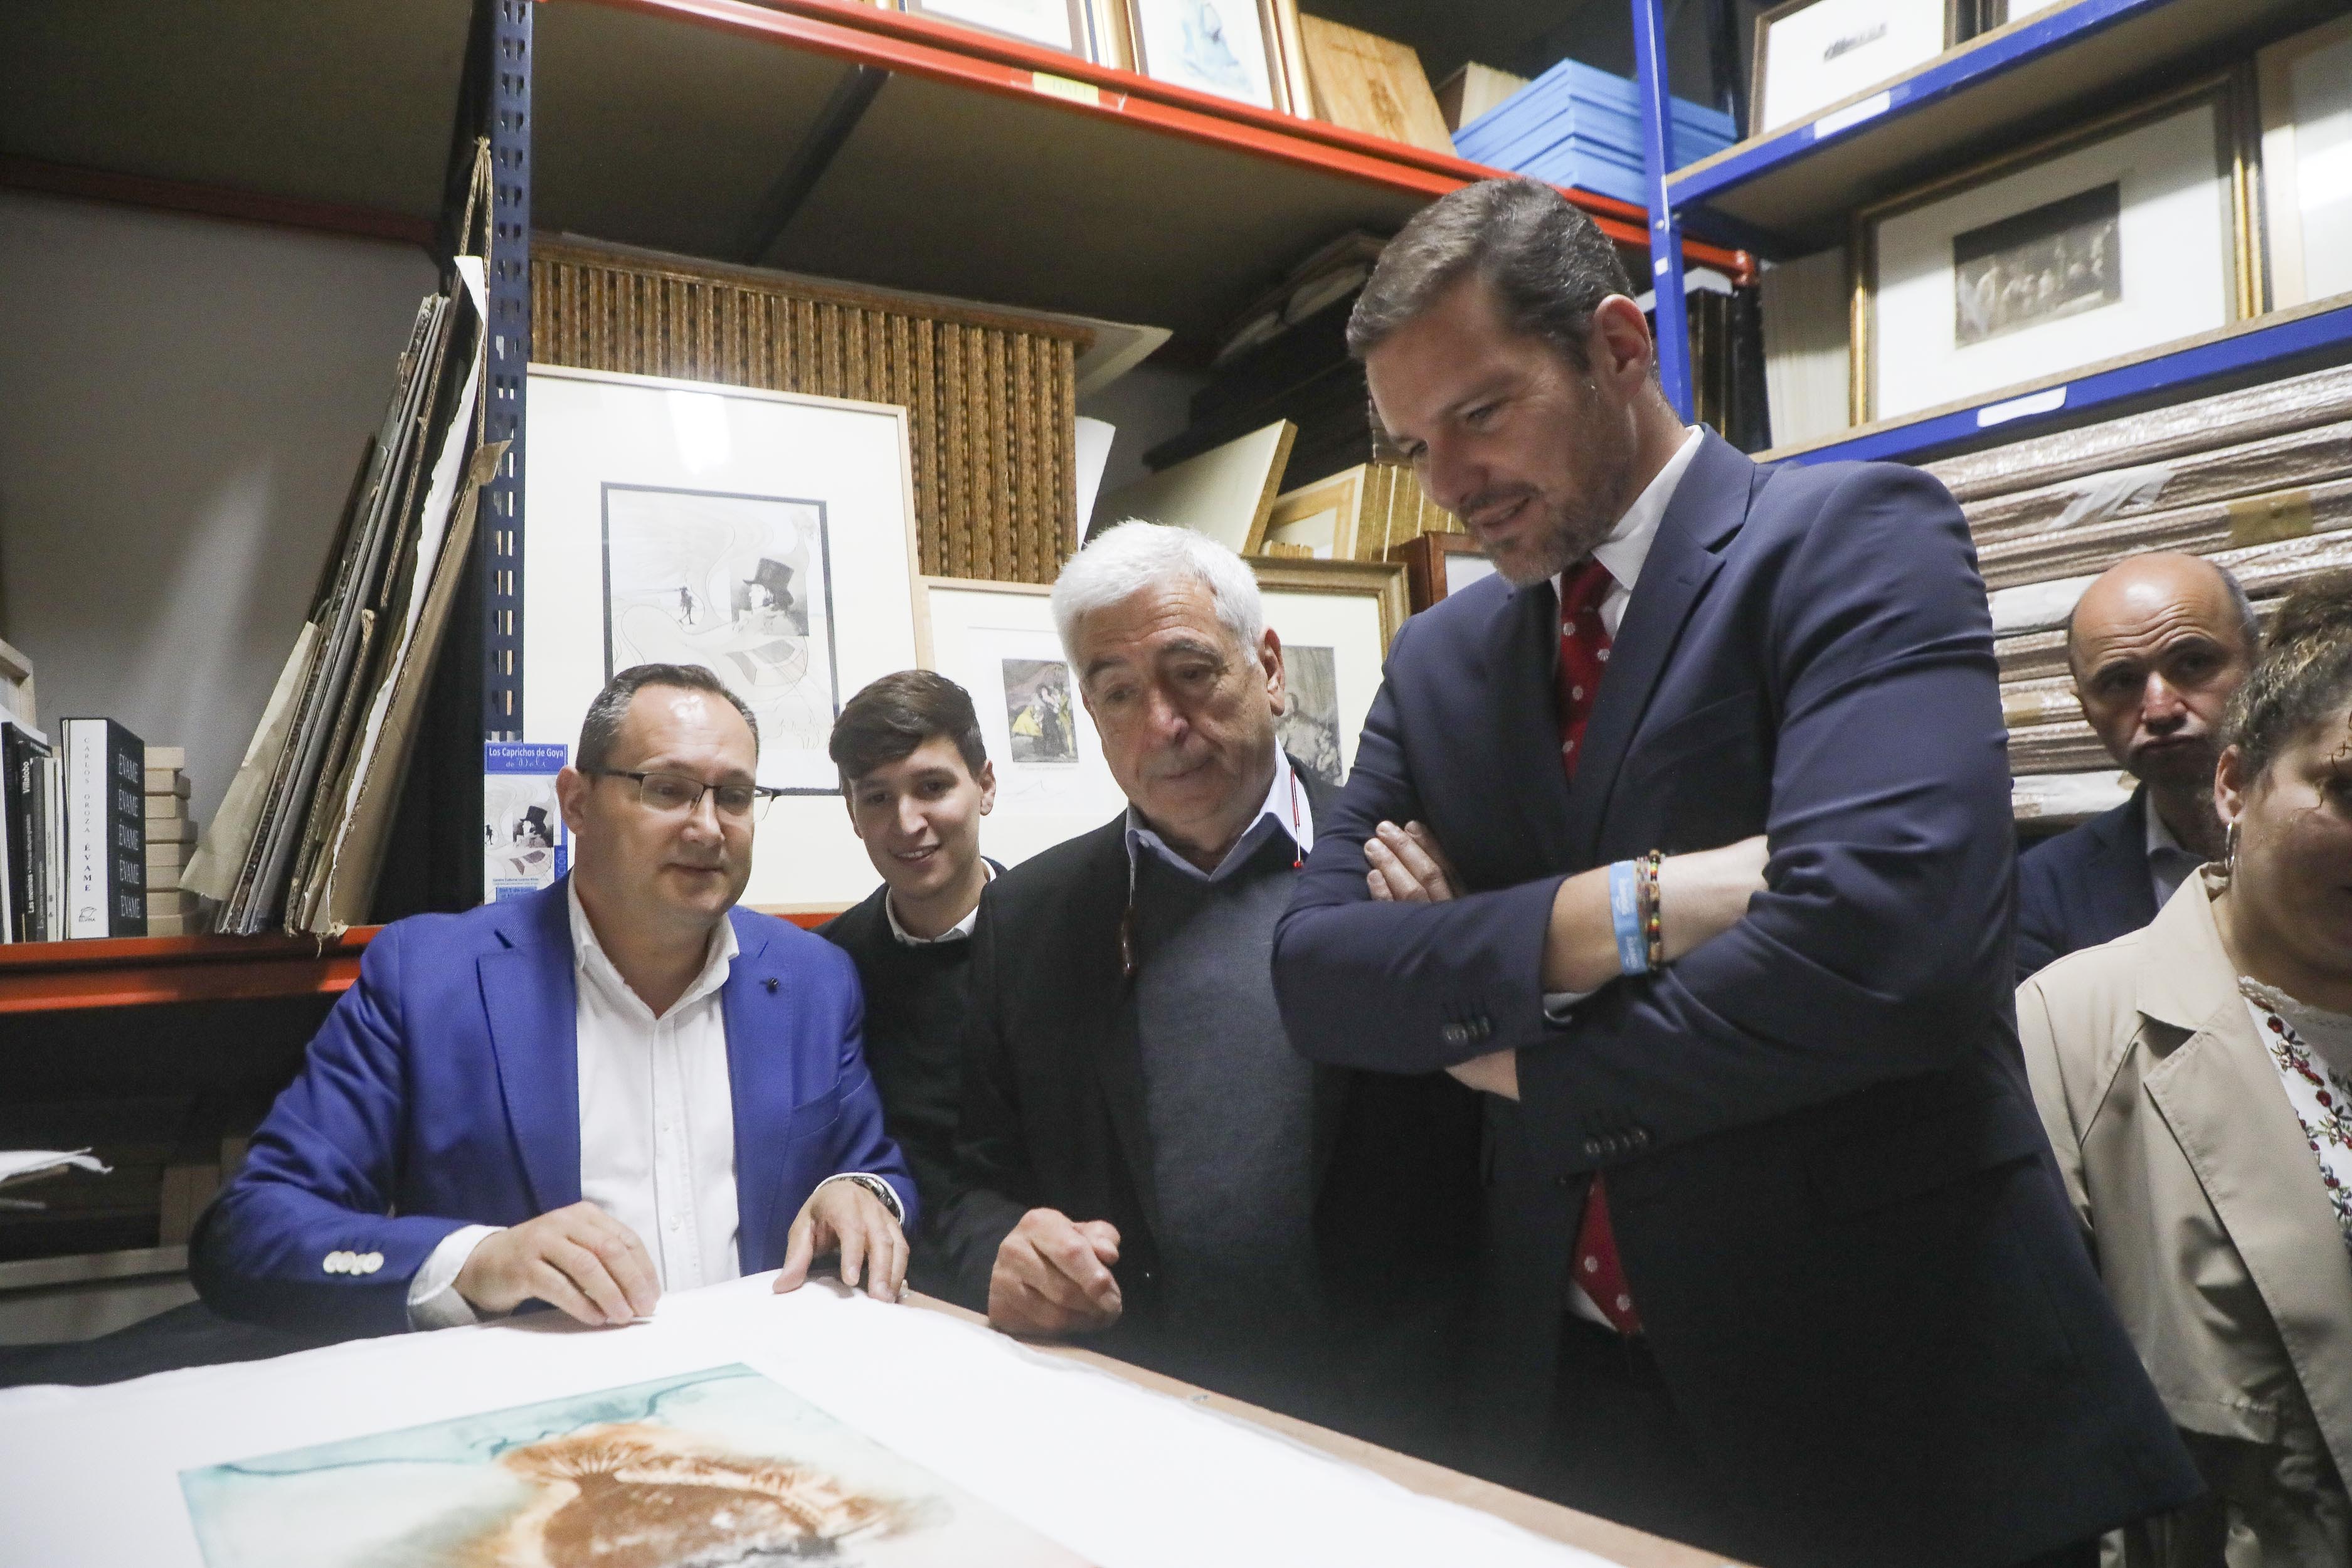 Image 4 of article López Campos convida a redescubrir a historia da Real Academia Galega de Belas Artes coa nova exposición Os traballos de Hércules